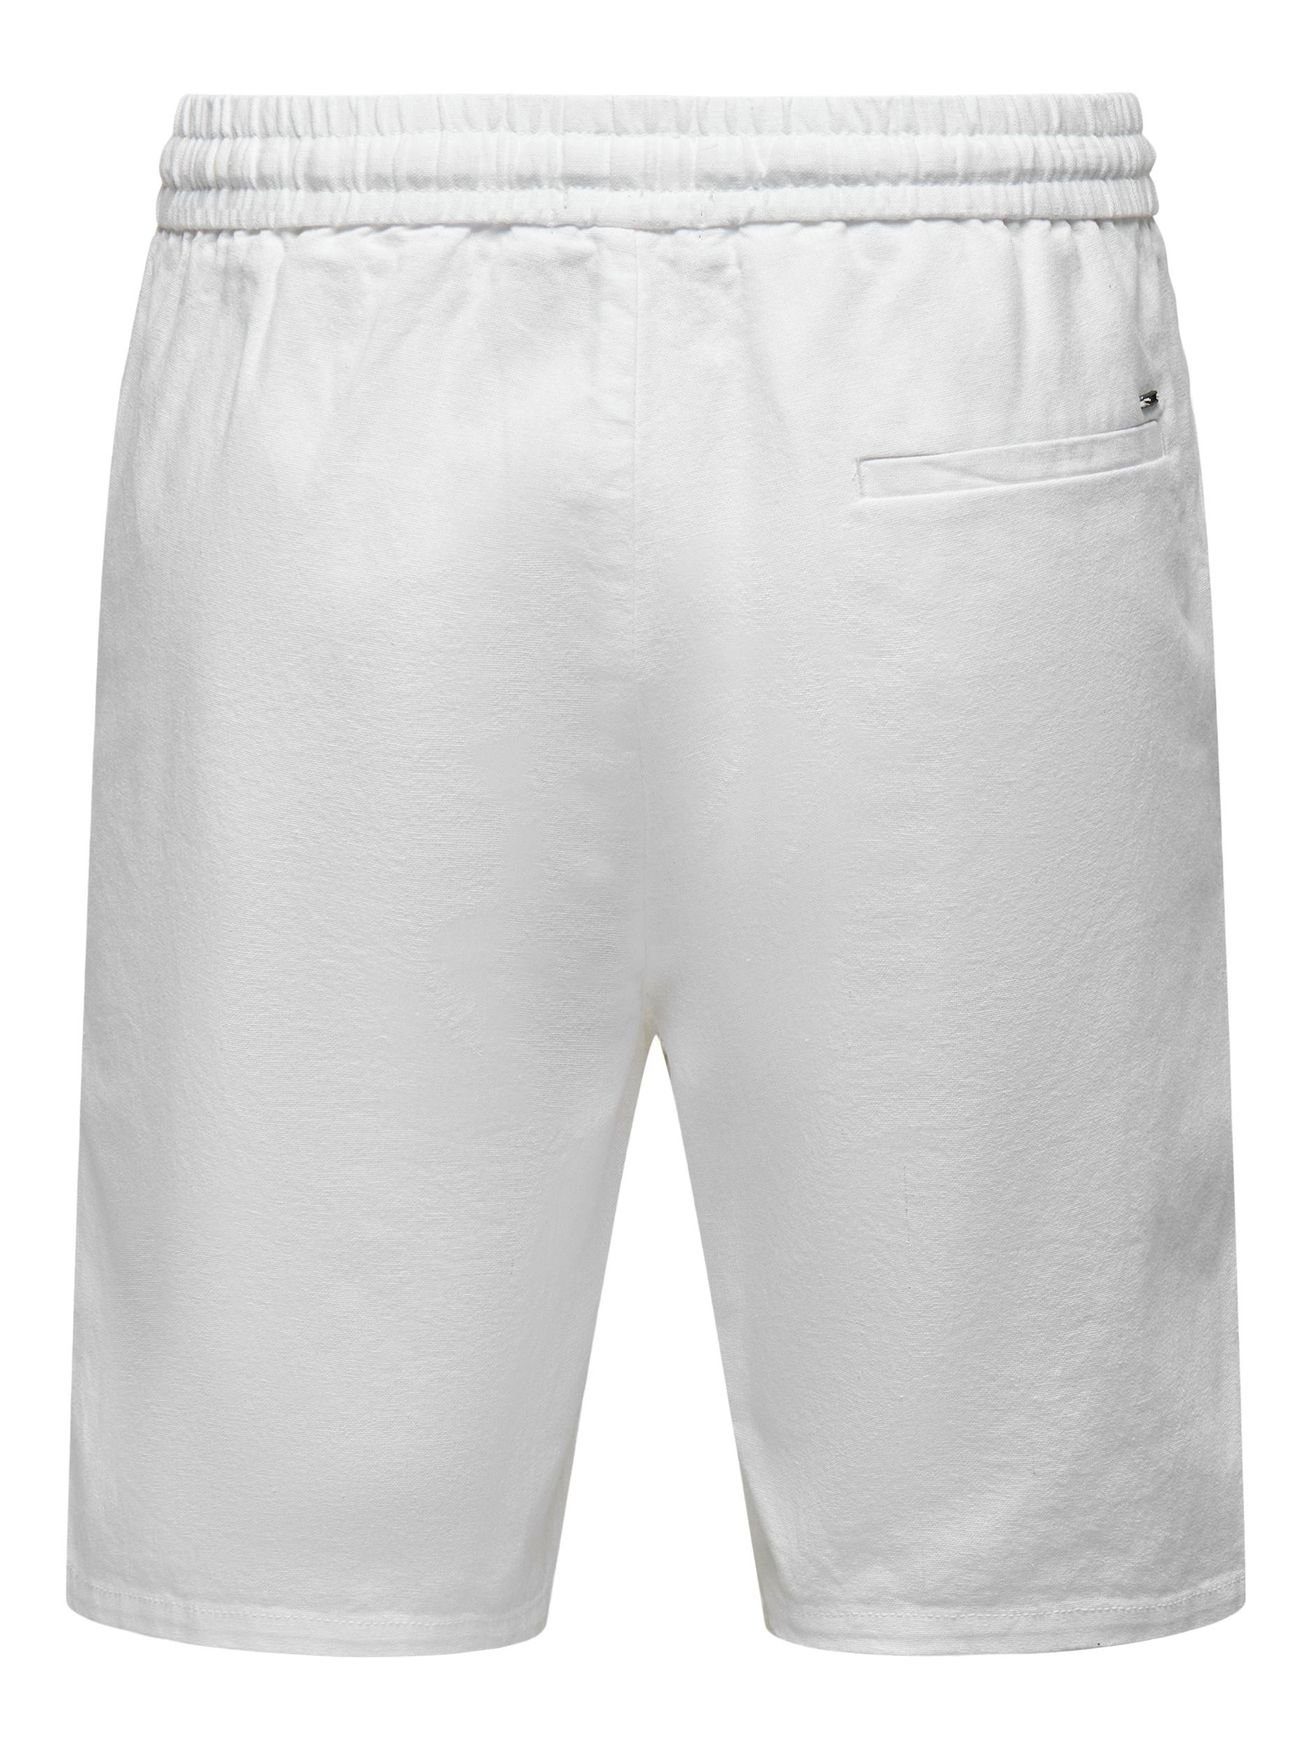 SONS ONSLINUS Leichte Weiß Hose Chinoshorts in Bermuda Stoff Shorts 5058 & ONLY